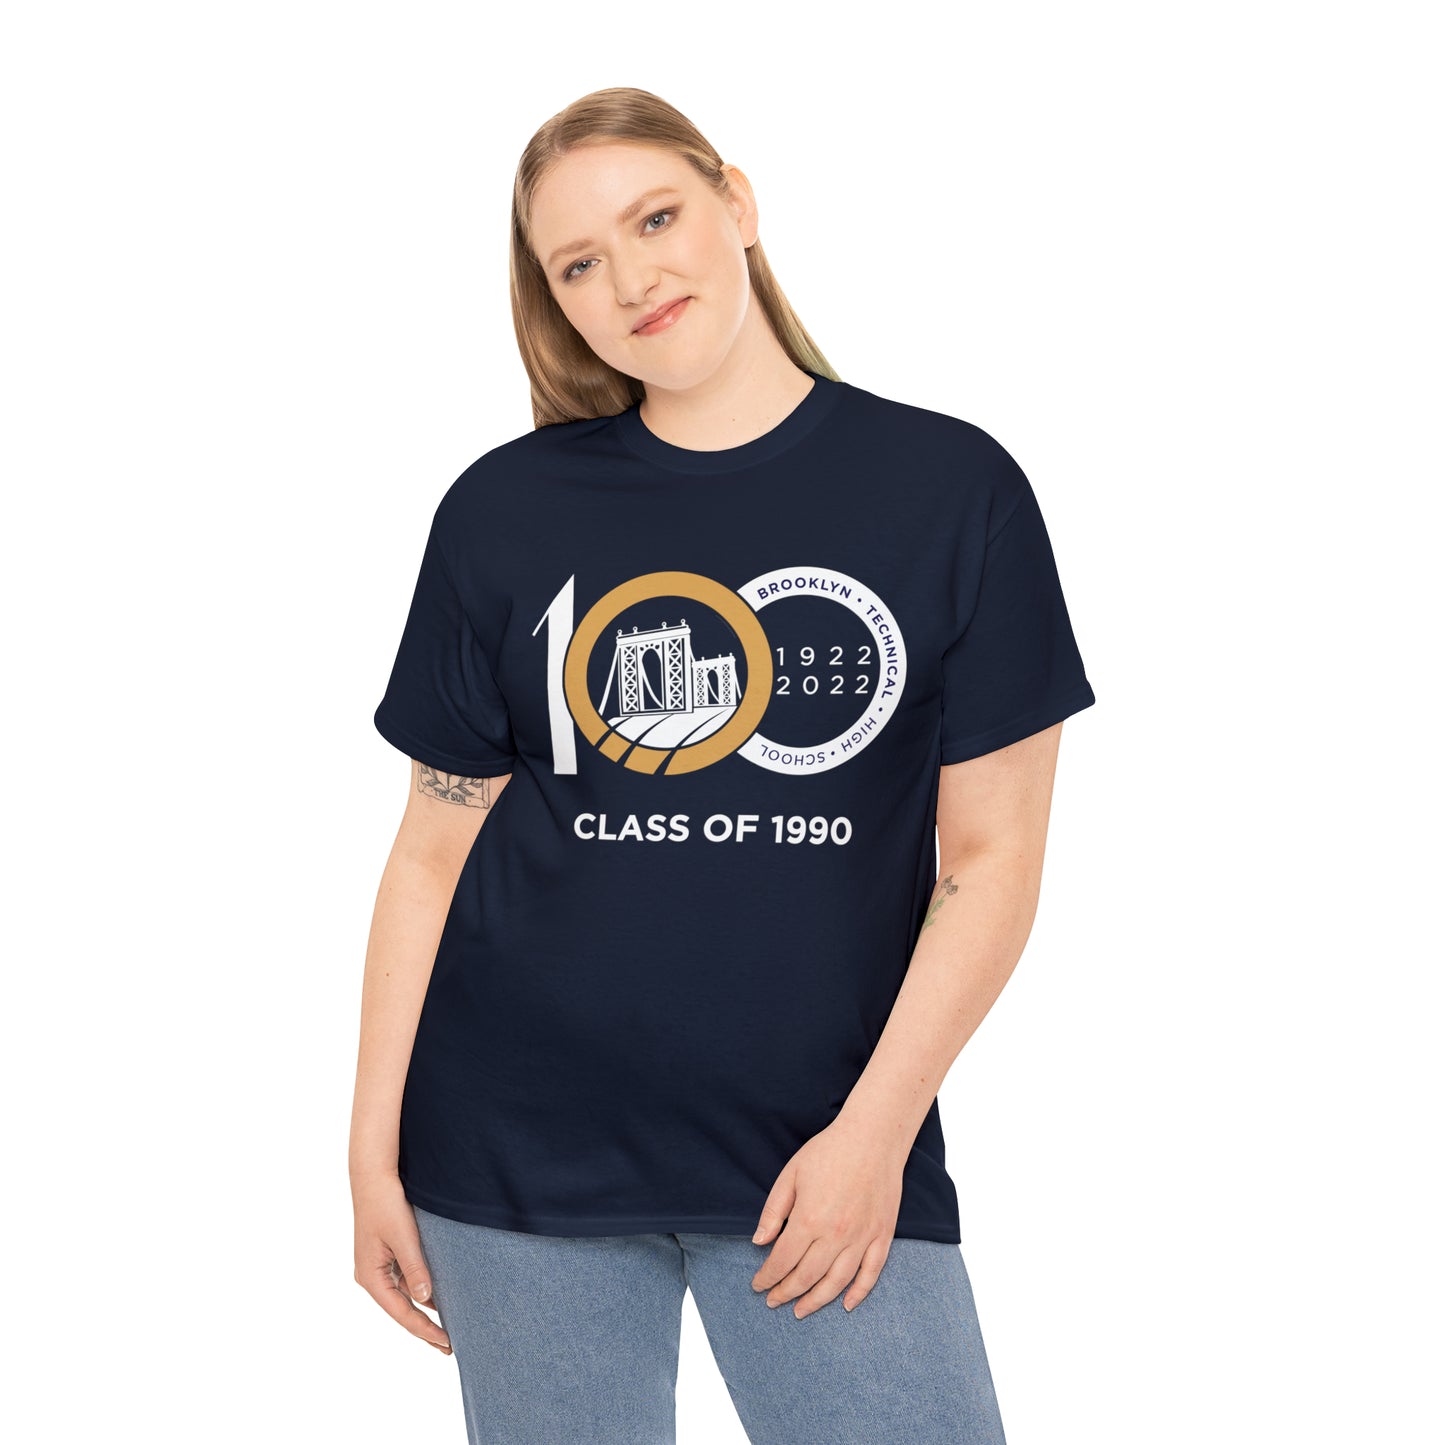 Centennial - Men's Heavy Cotton T-Shirt - Class Of 1990